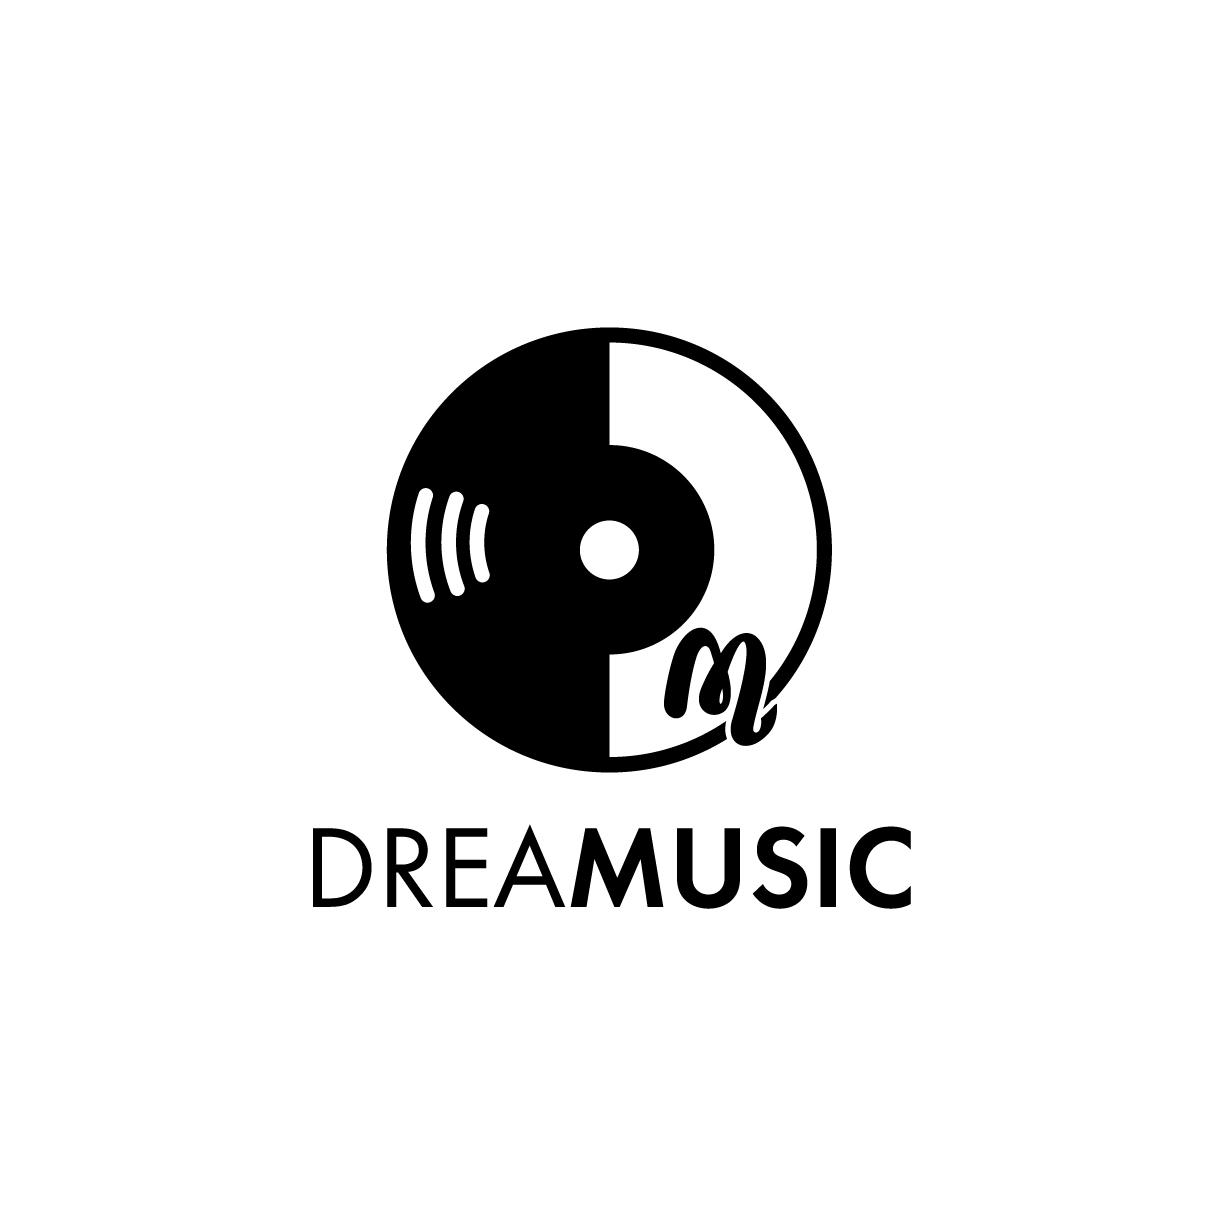 レコード会社「ドリーミュージック」のロゴ